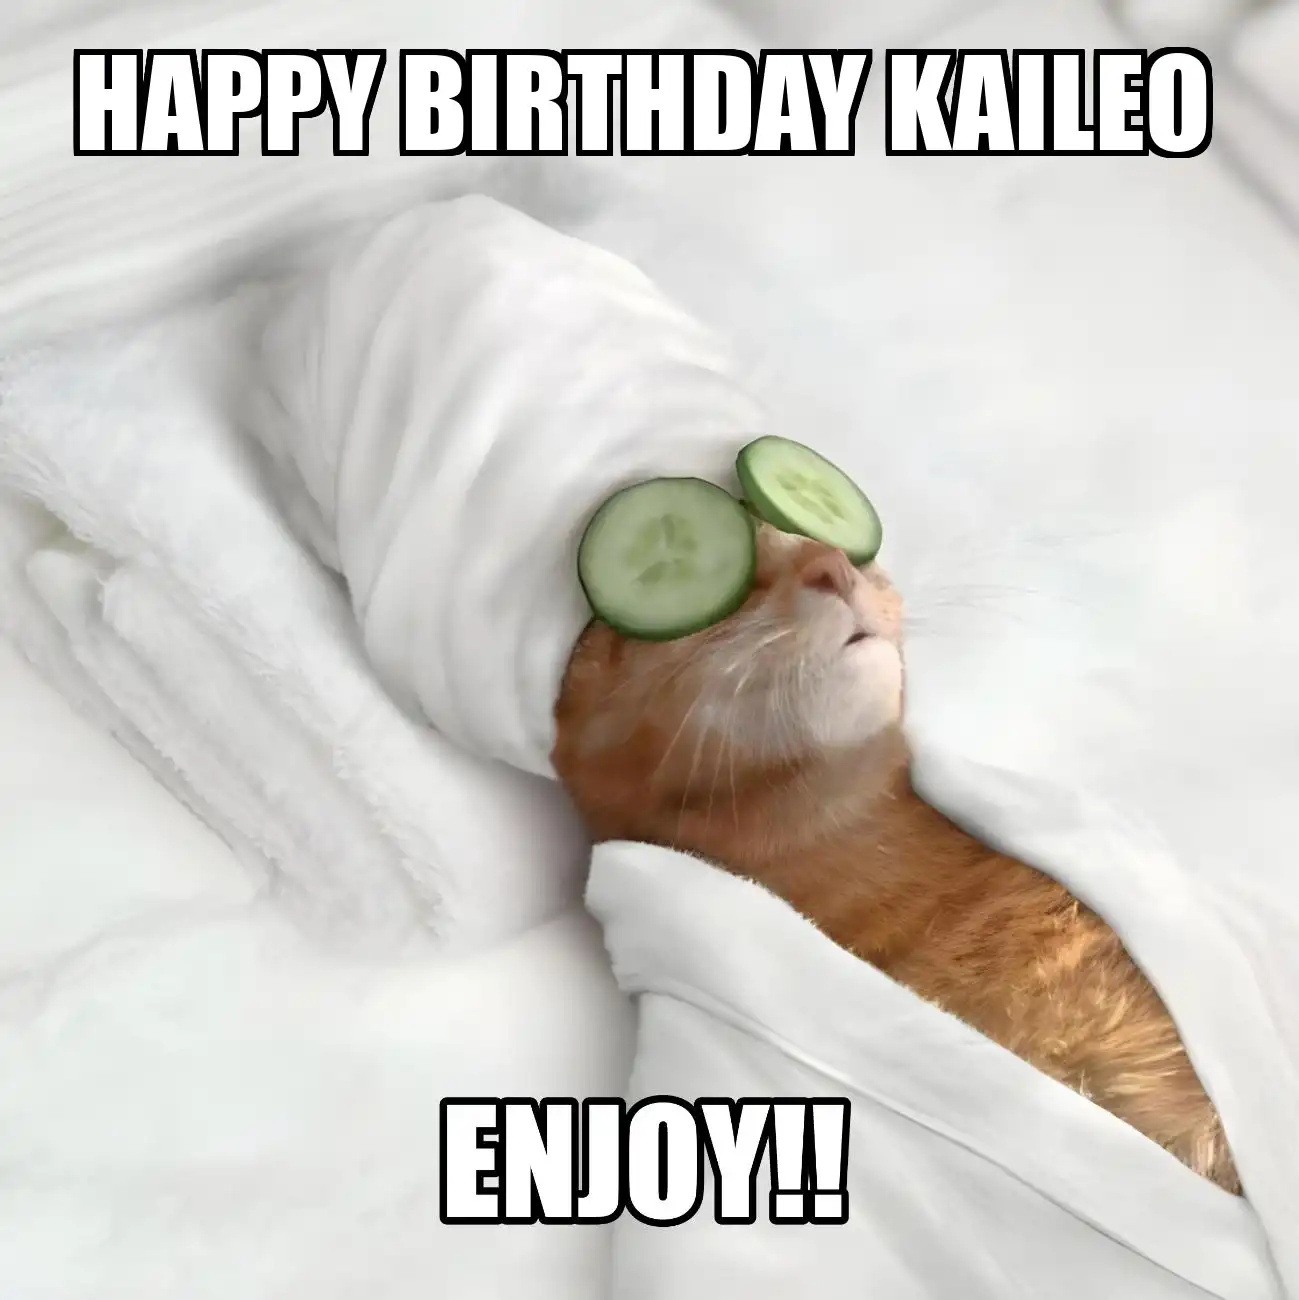 Happy Birthday Kaileo Enjoy Cat Meme